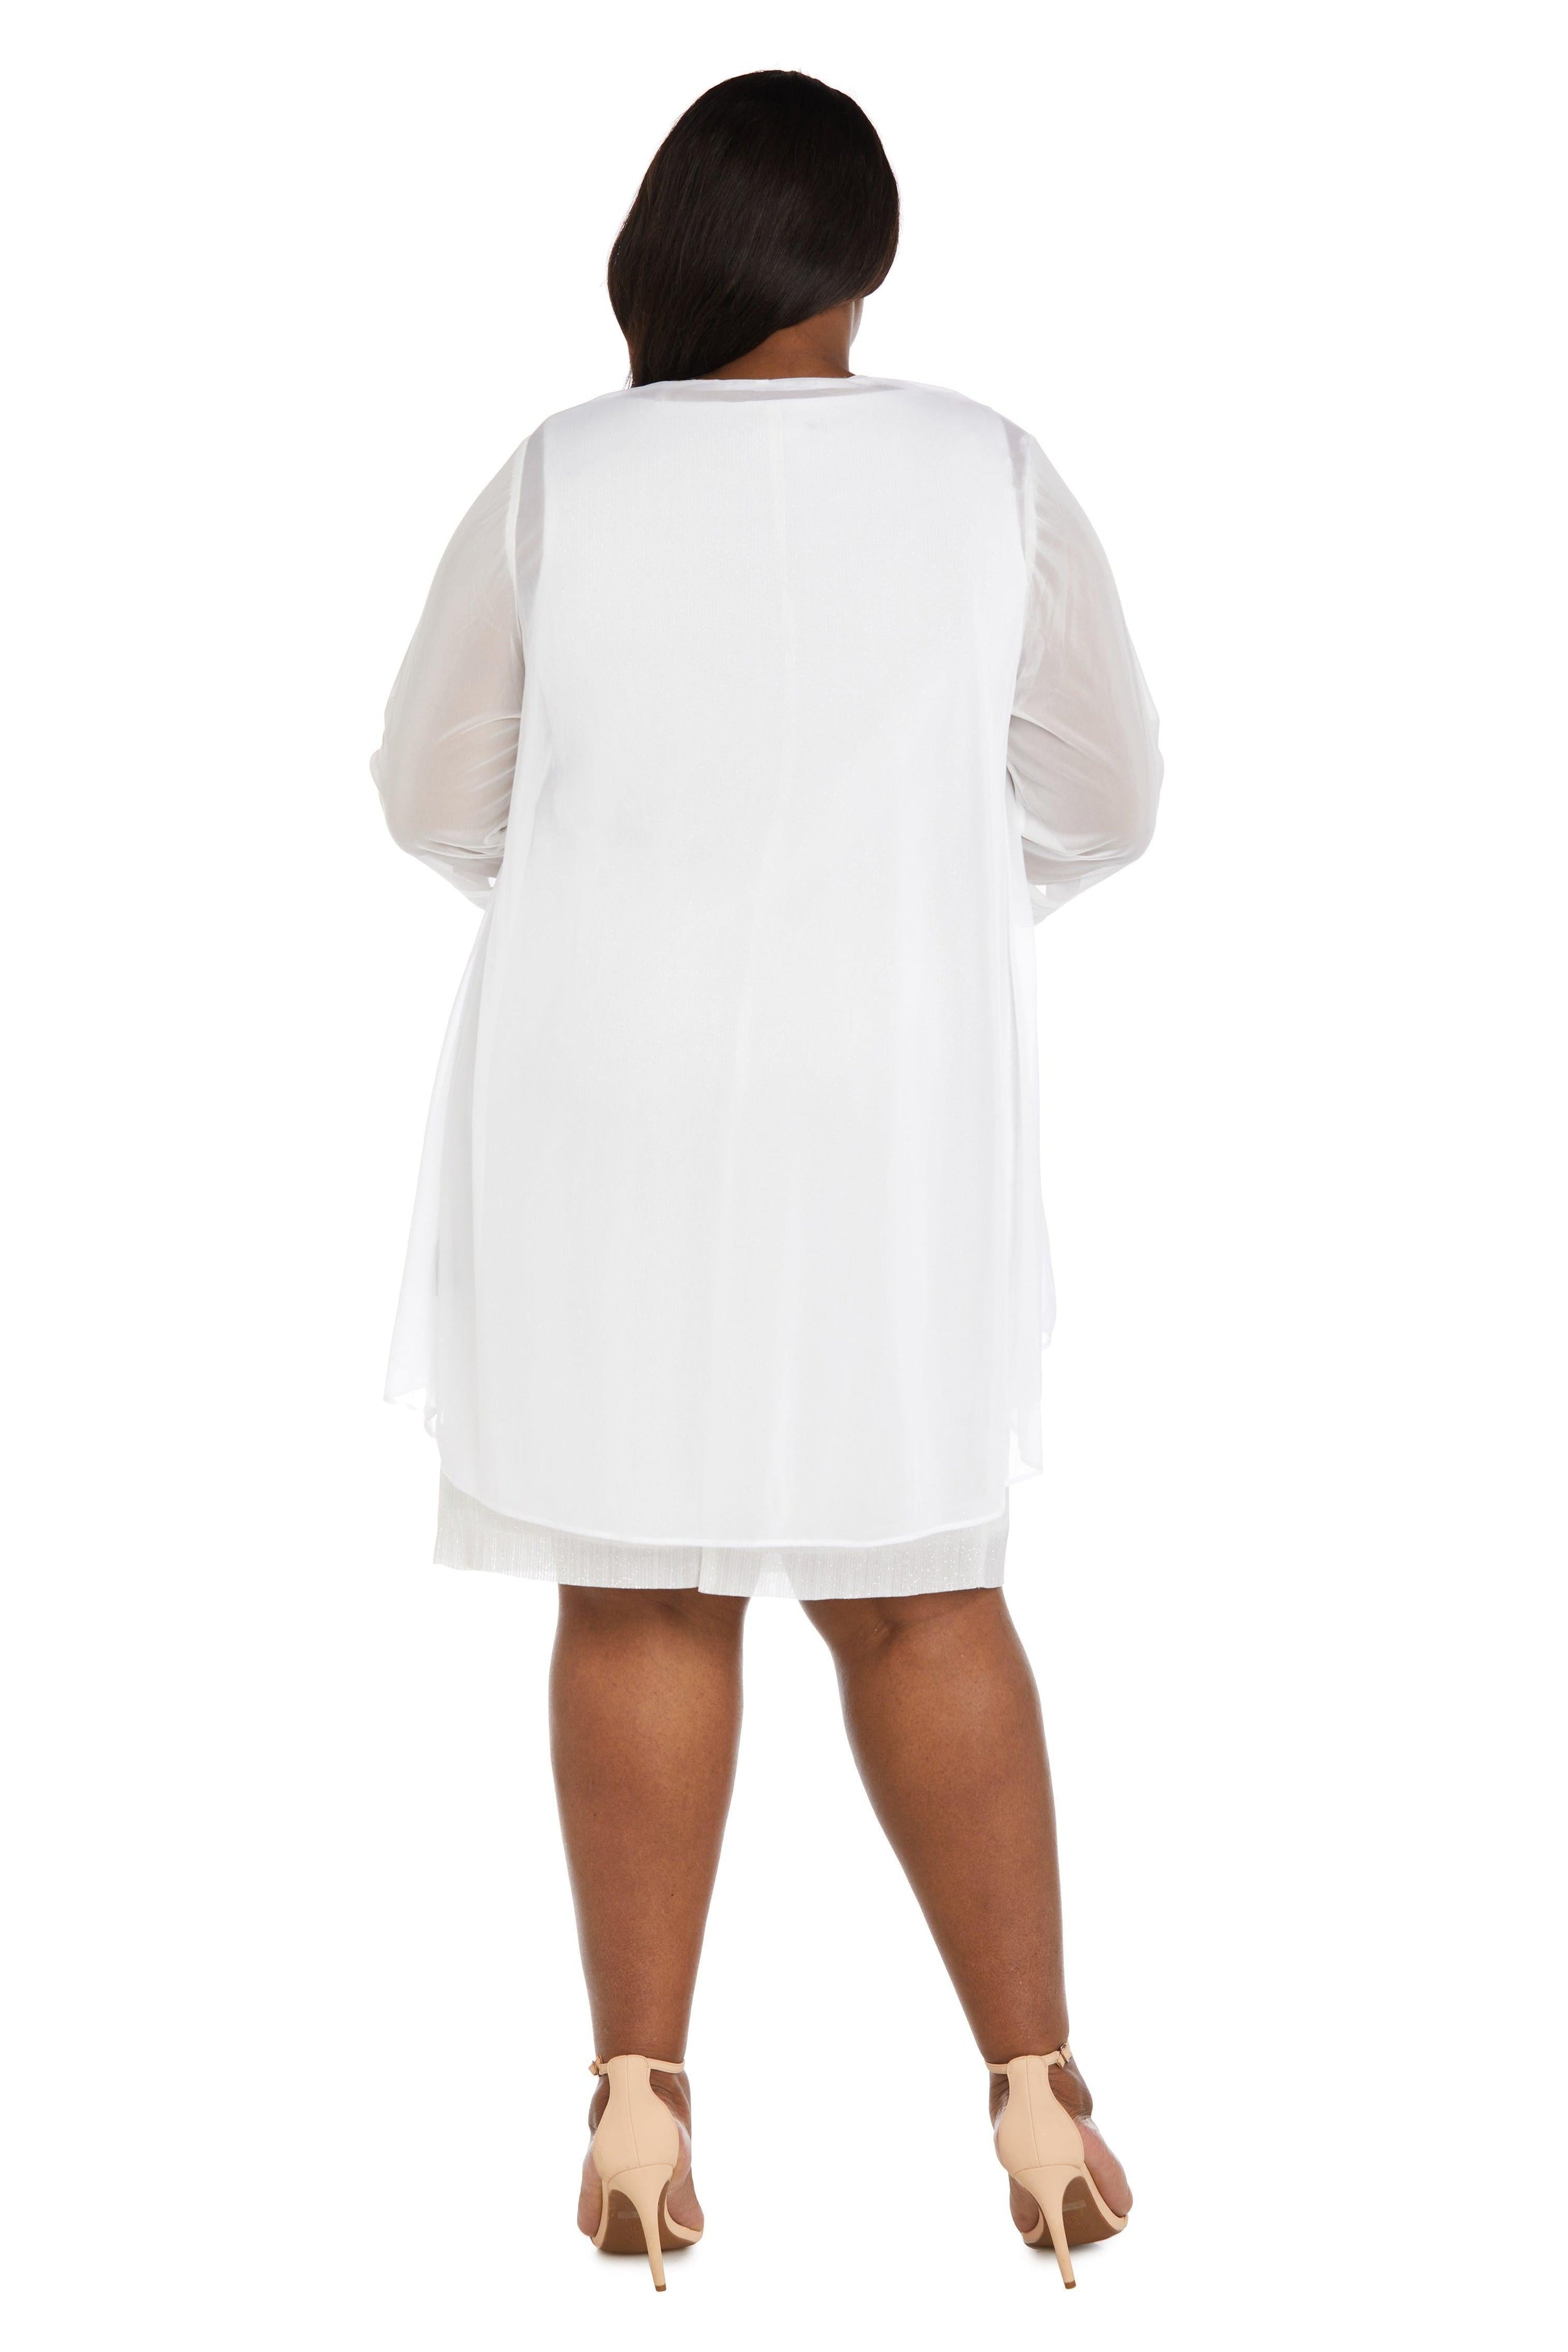 R&M Richards Short Plus Size Dress 2583W - The Dress Outlet